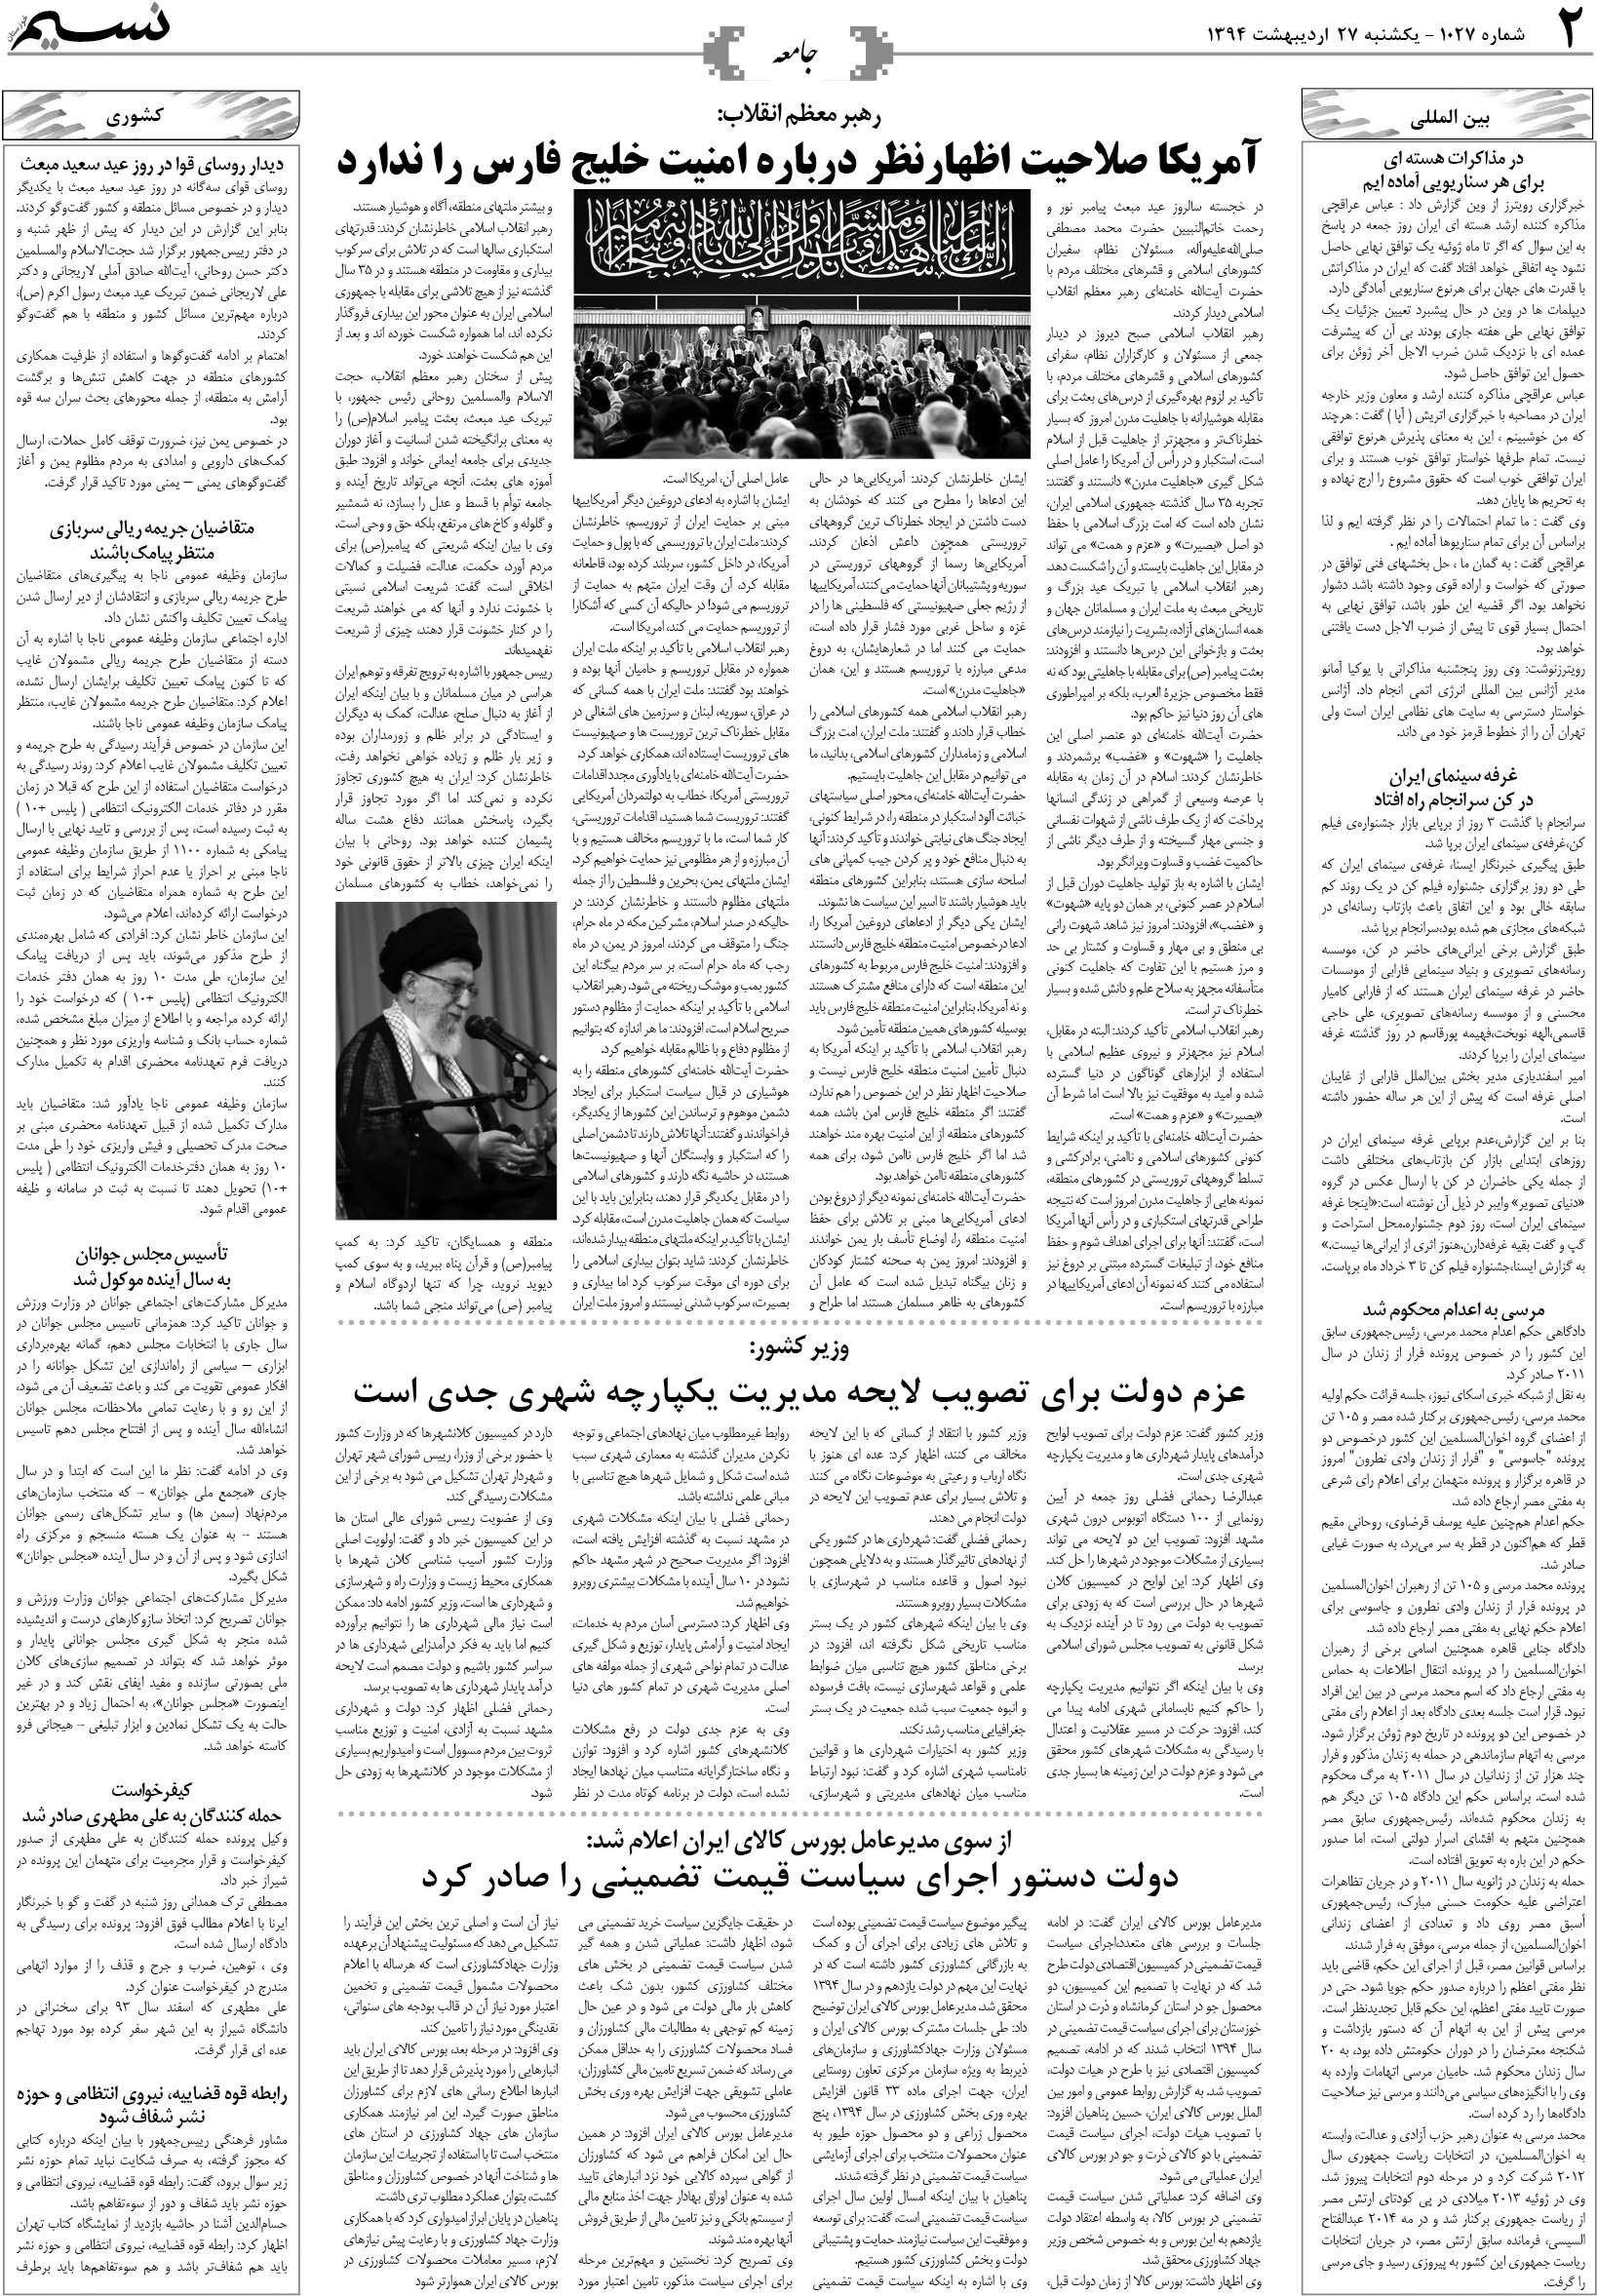 صفحه جامعه روزنامه نسیم شماره 1027